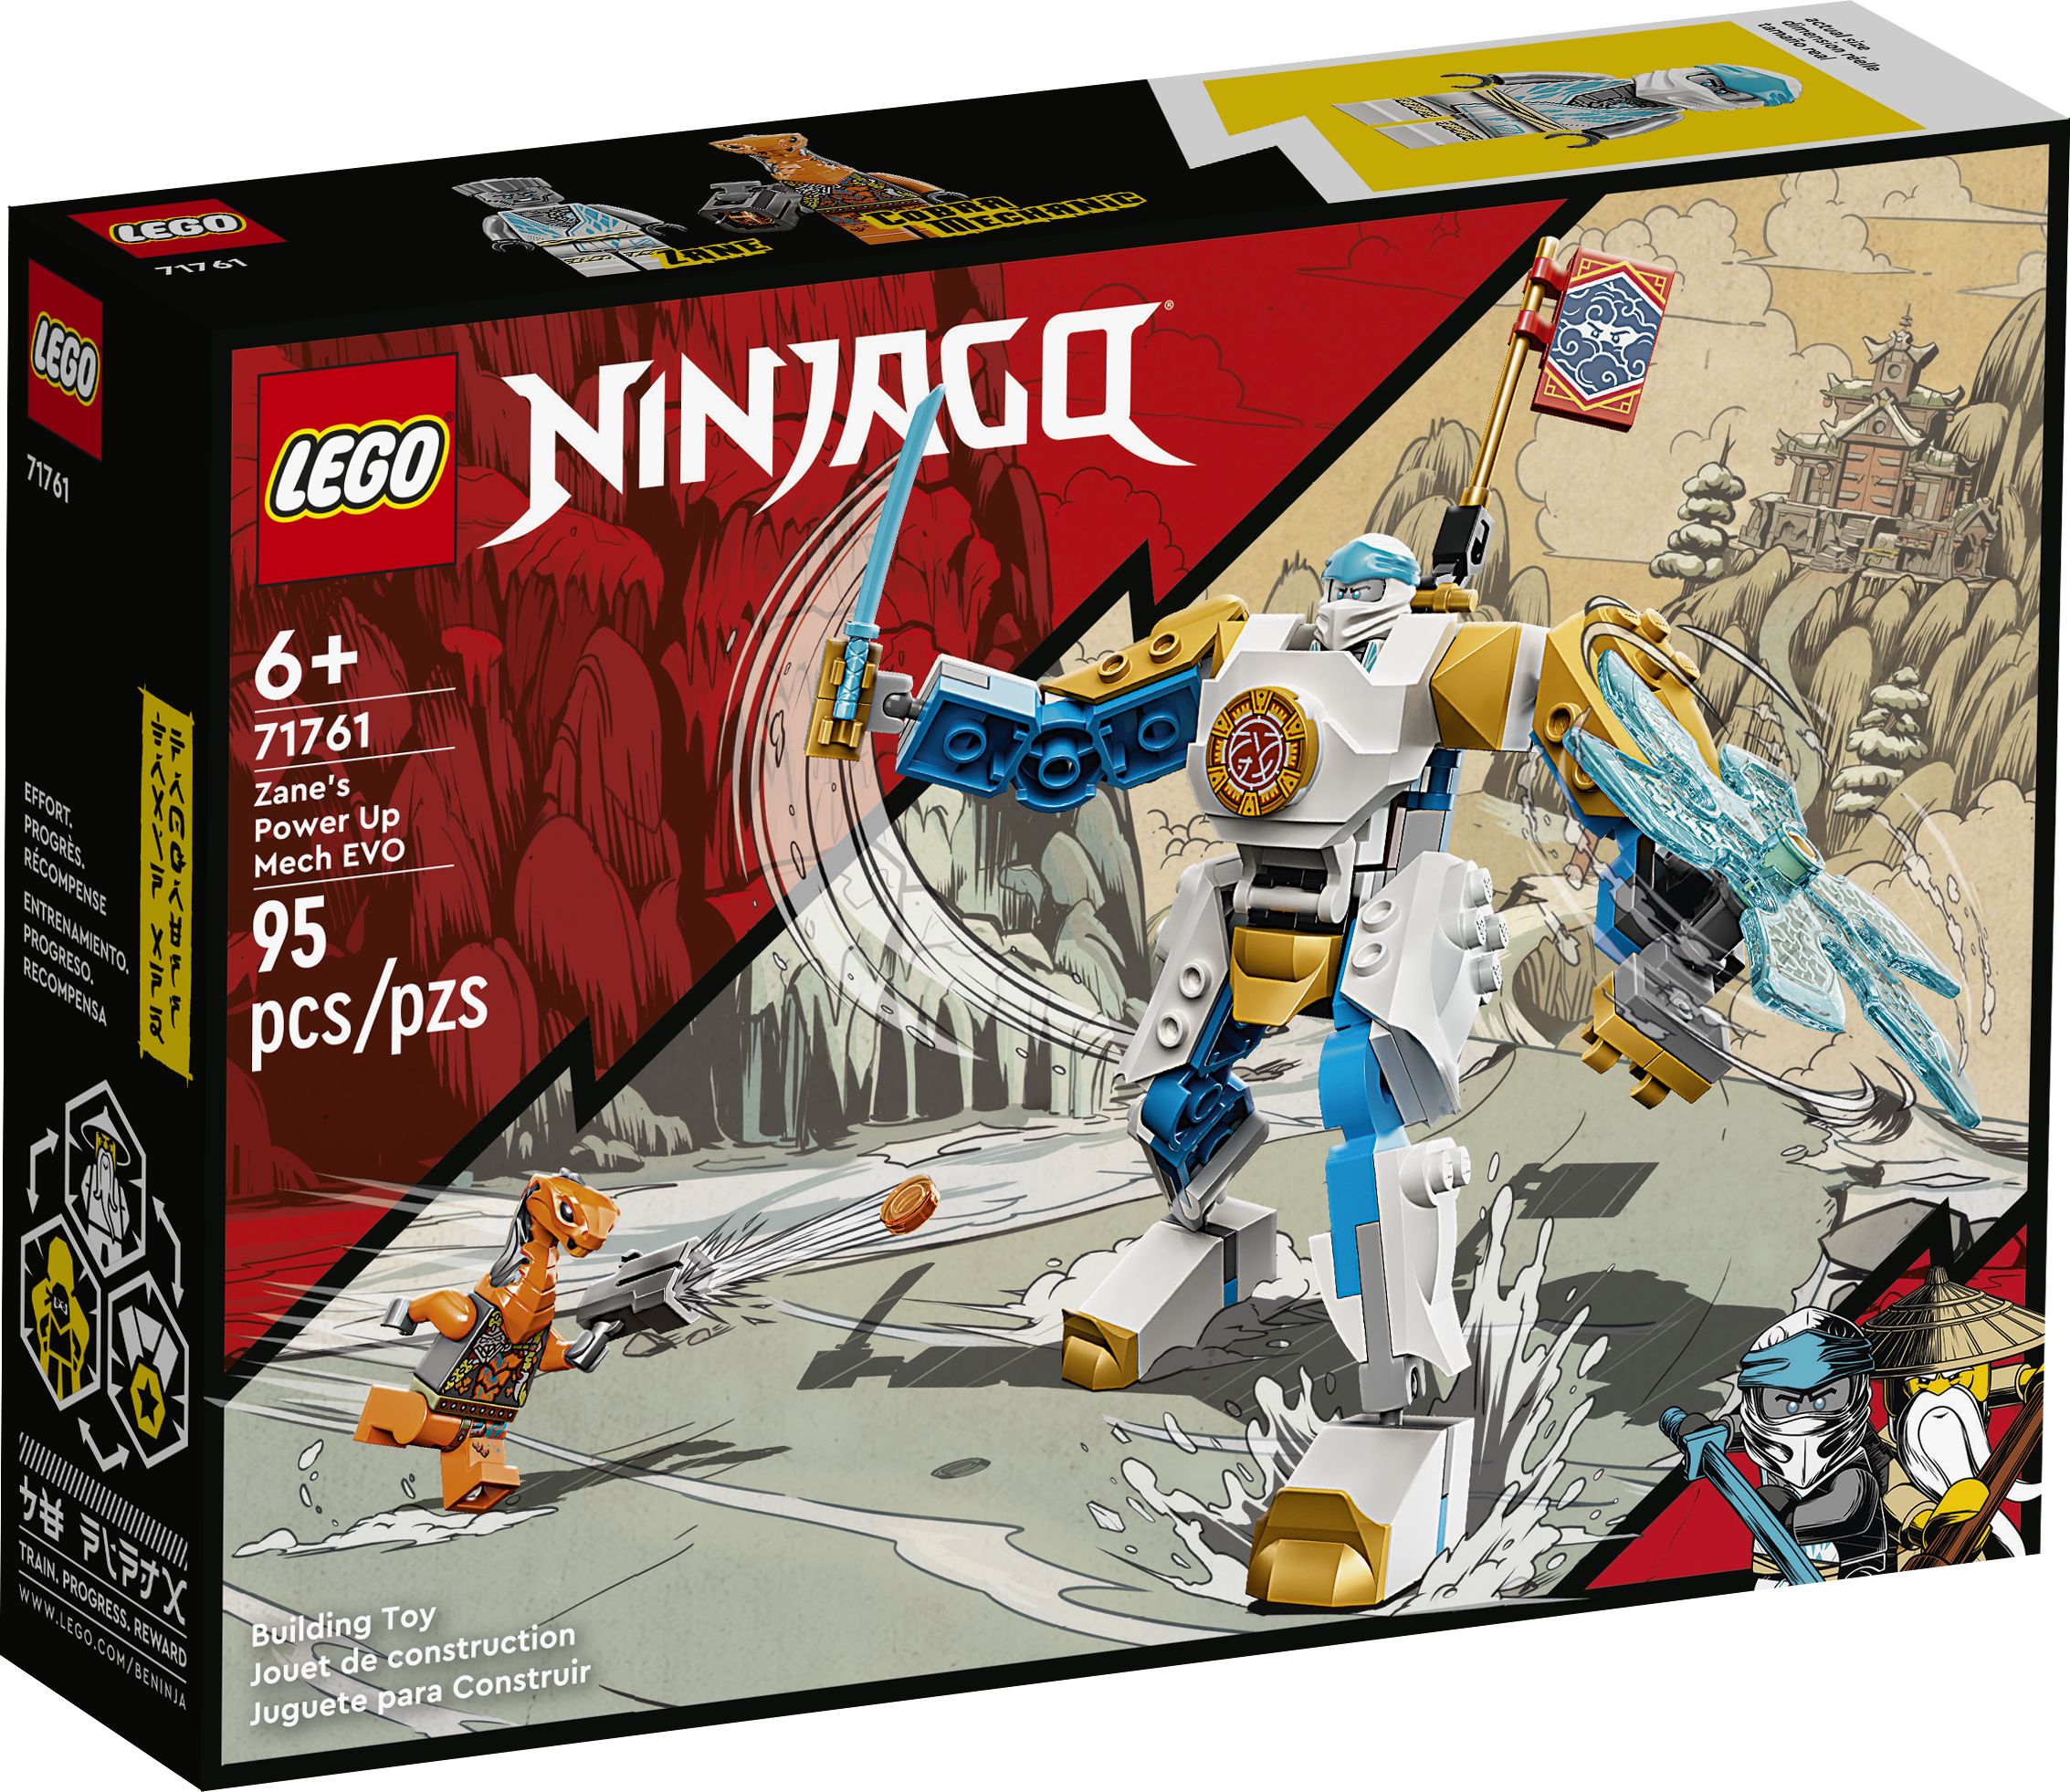 LEGO Ninjago 71761 Zanes Power-Up-Mech EVO LEGO_71761_Box1_v39.jpg